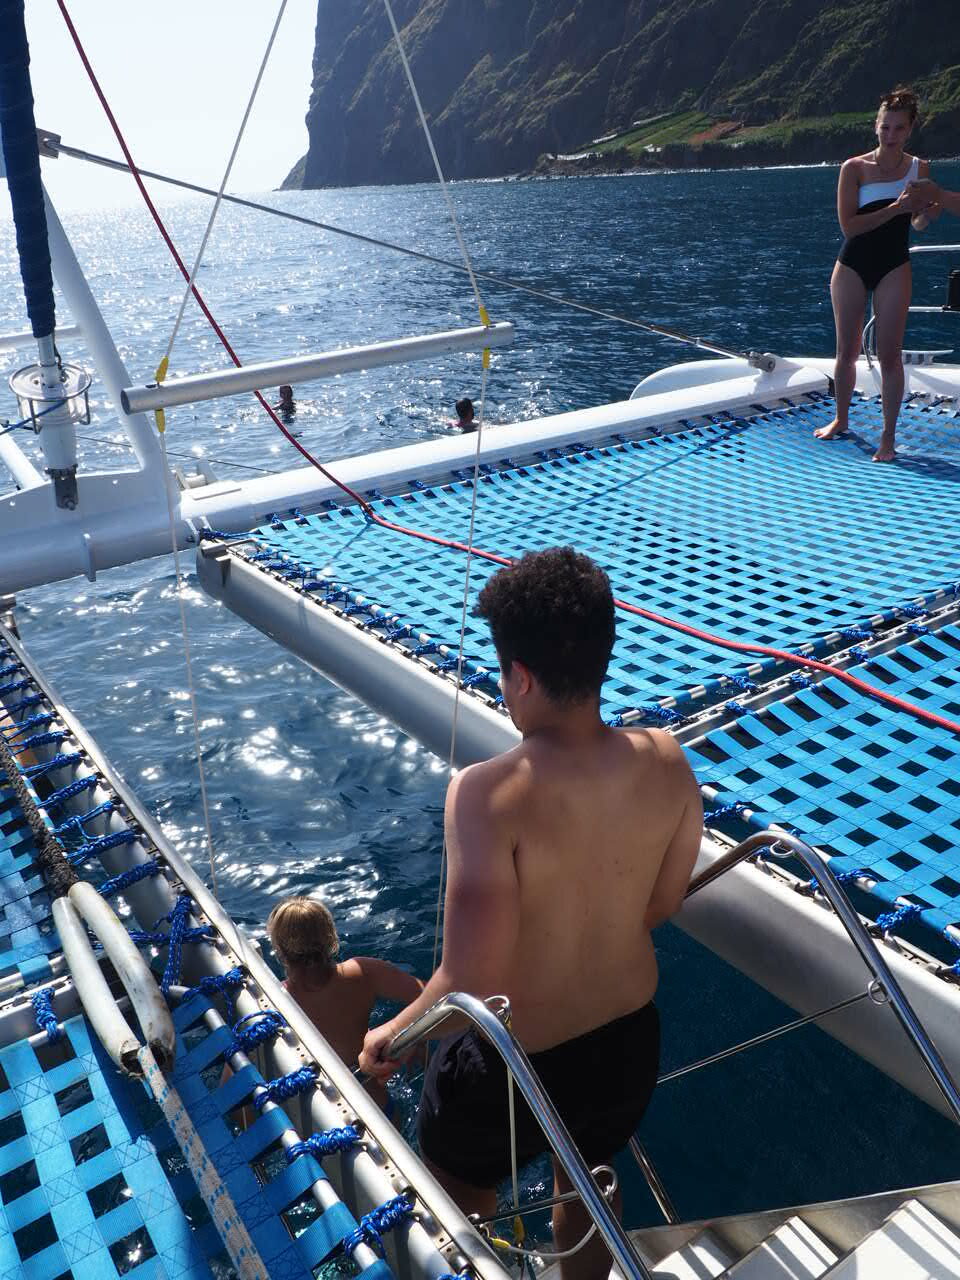 dauphins-madere-tour-en-catamaran-que-faire-blog-voyage-clioandco-se-baigner-en-voyant-les-dauphins-rotated